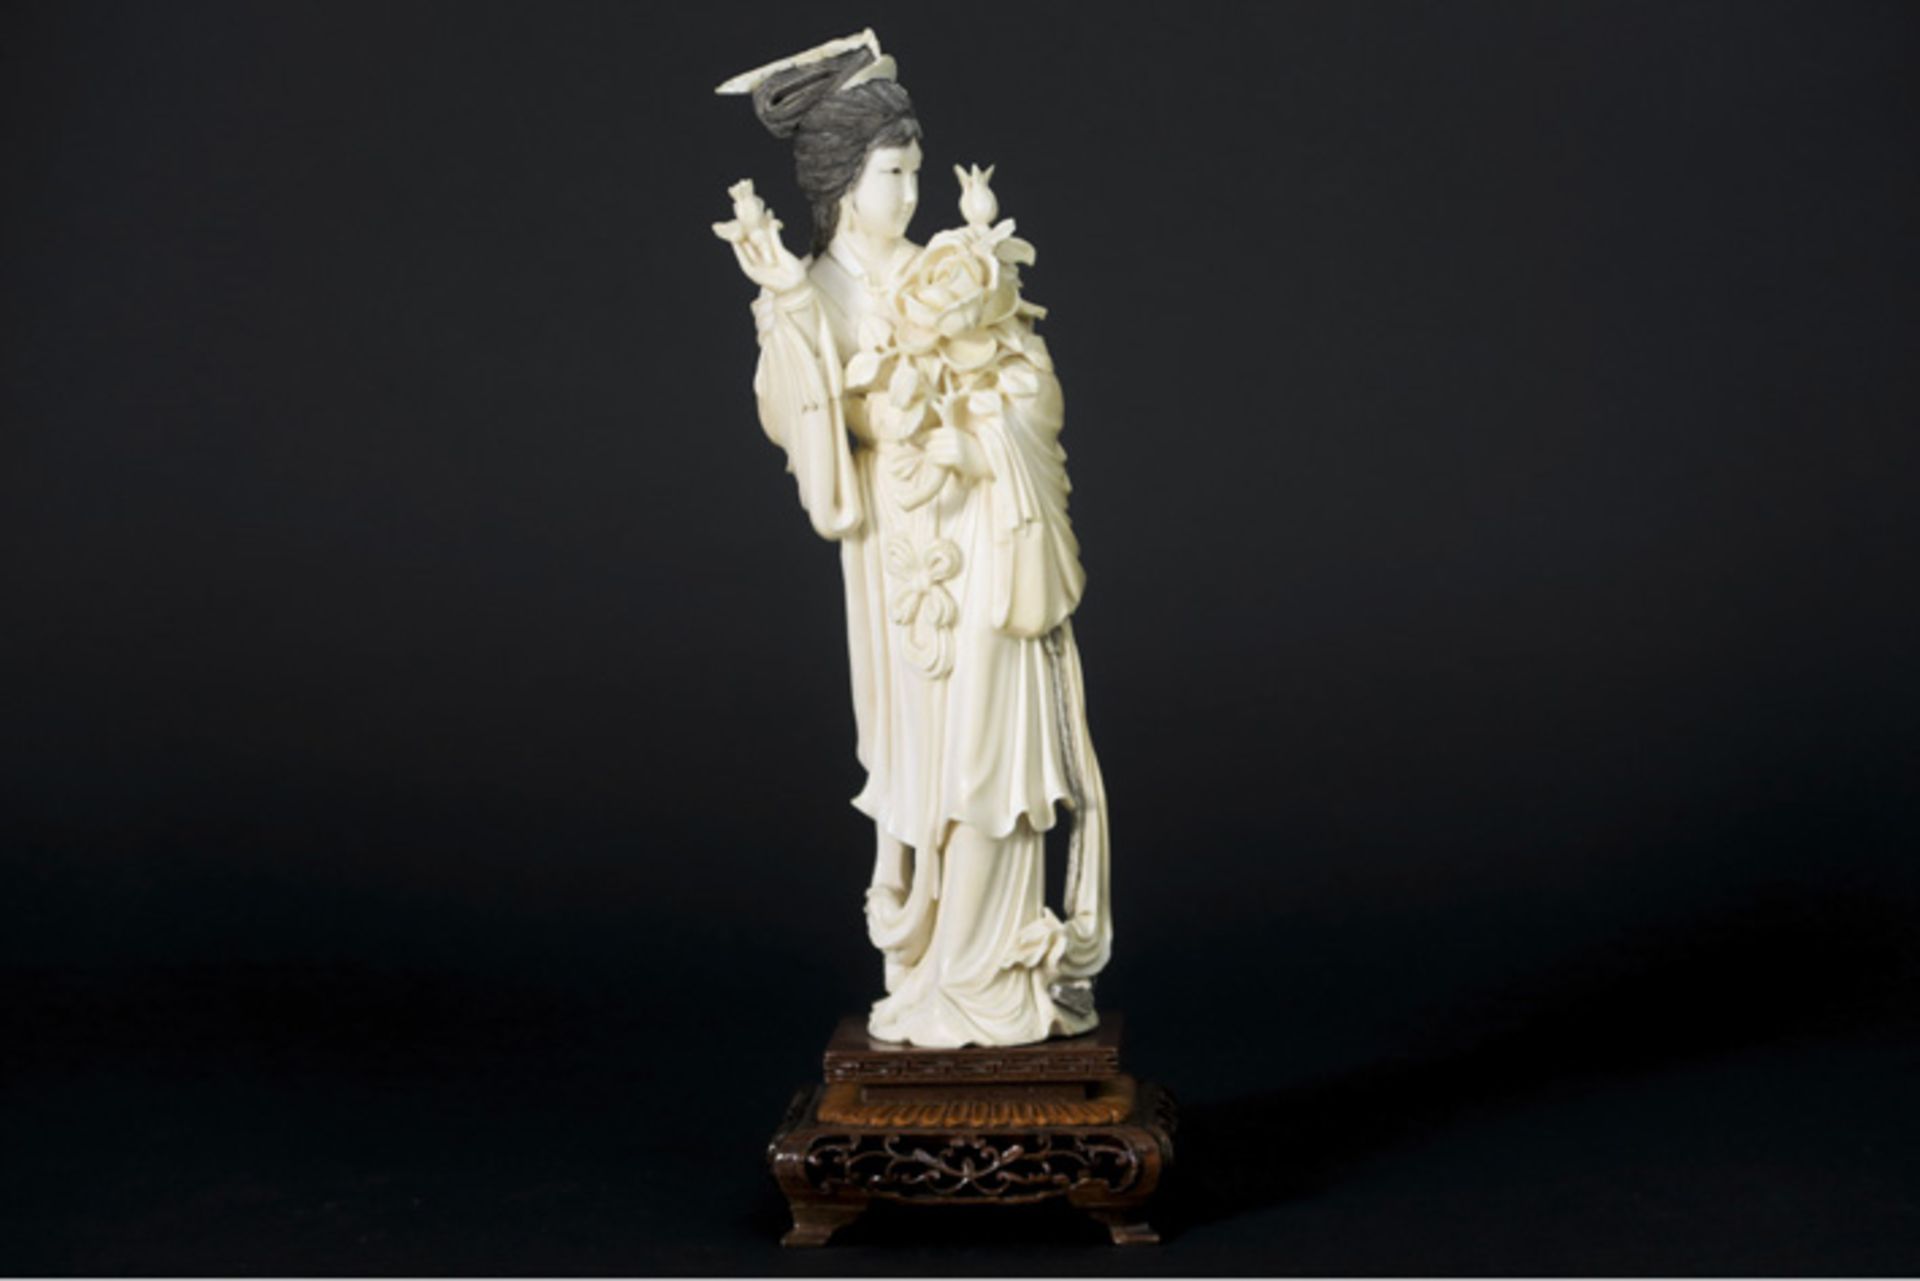 Oude Chinese sculptuur in ivoor : "Bloemenmeisje" - hoogte : 25,5 cm - gewicht : 590 gram - ca